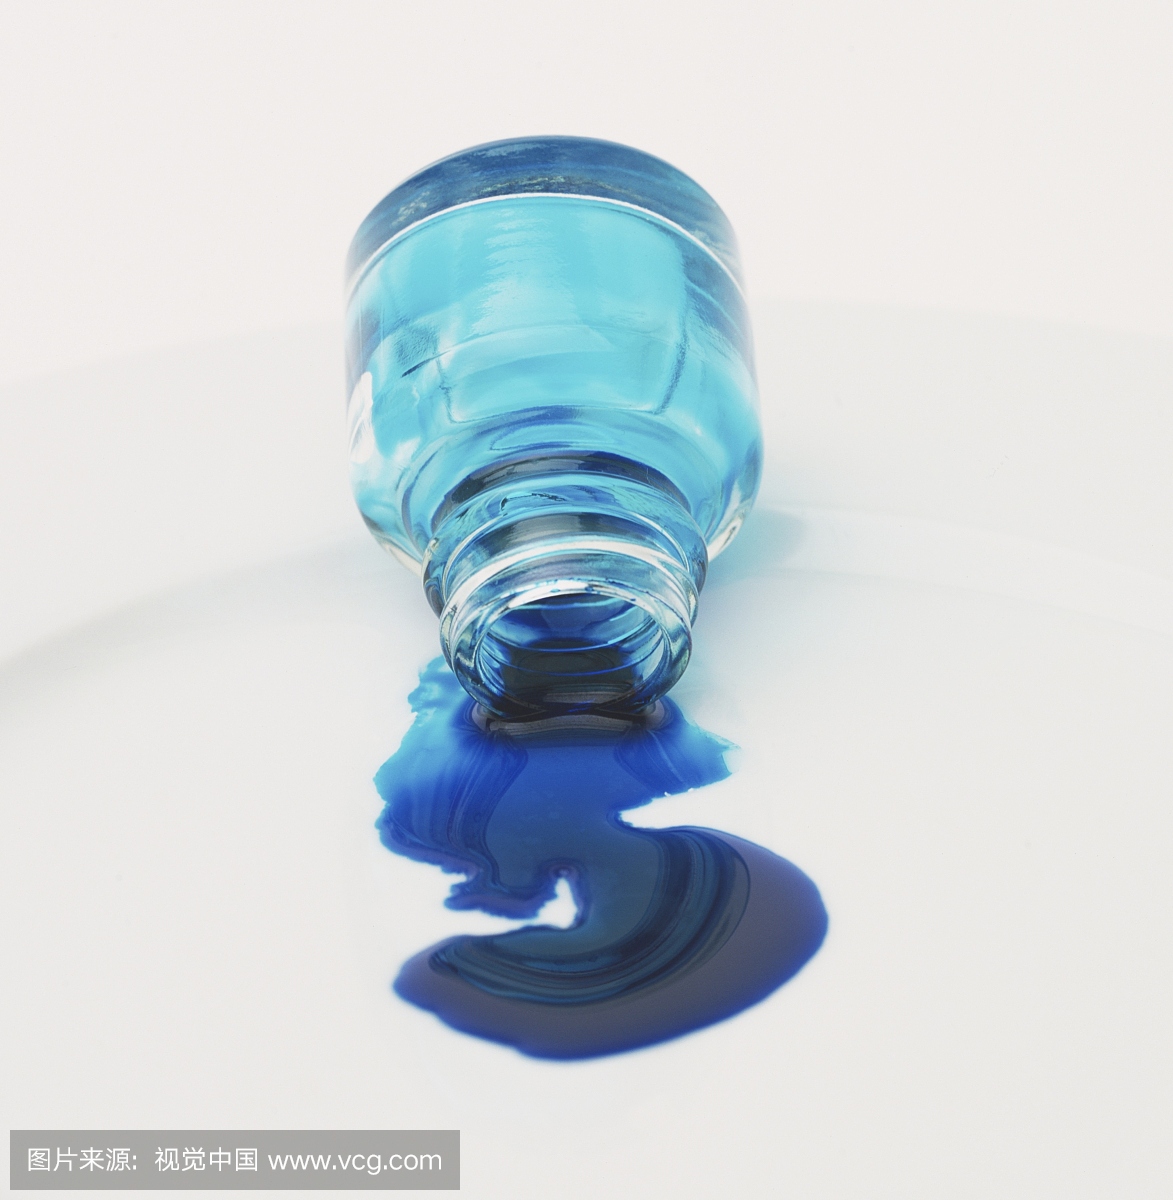 蓝色墨水从玻璃壶中倒出来,放在白板上,正视图